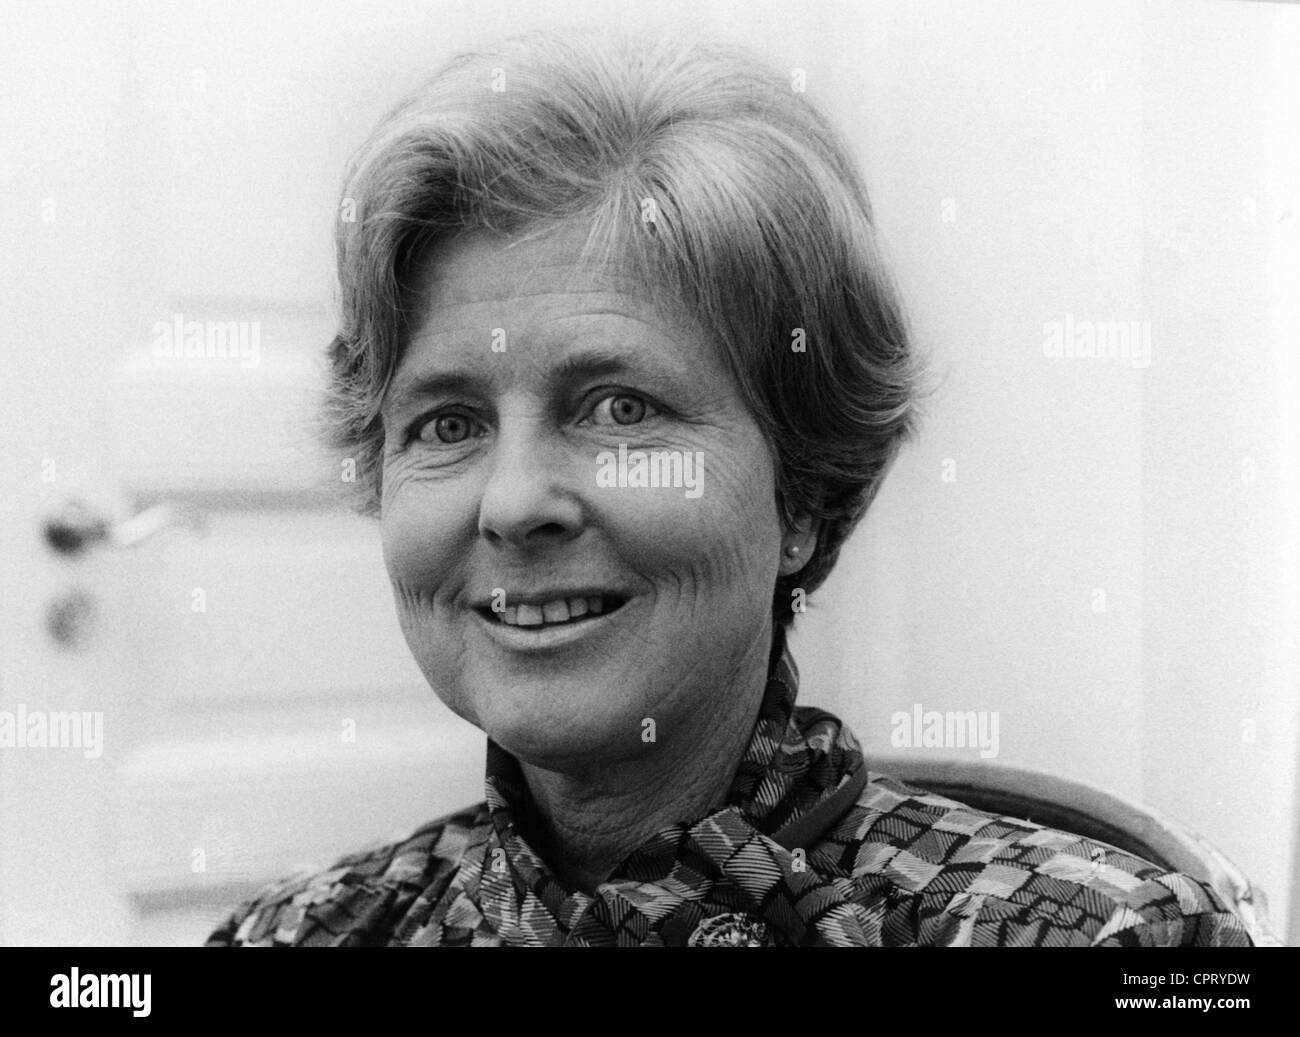 Weizsaecker, Marianne von, * 17.5.1932, wife of Richard von Weizsaecker (President of Germany 1984 - 1994), portrait, circa 1985, Stock Photo